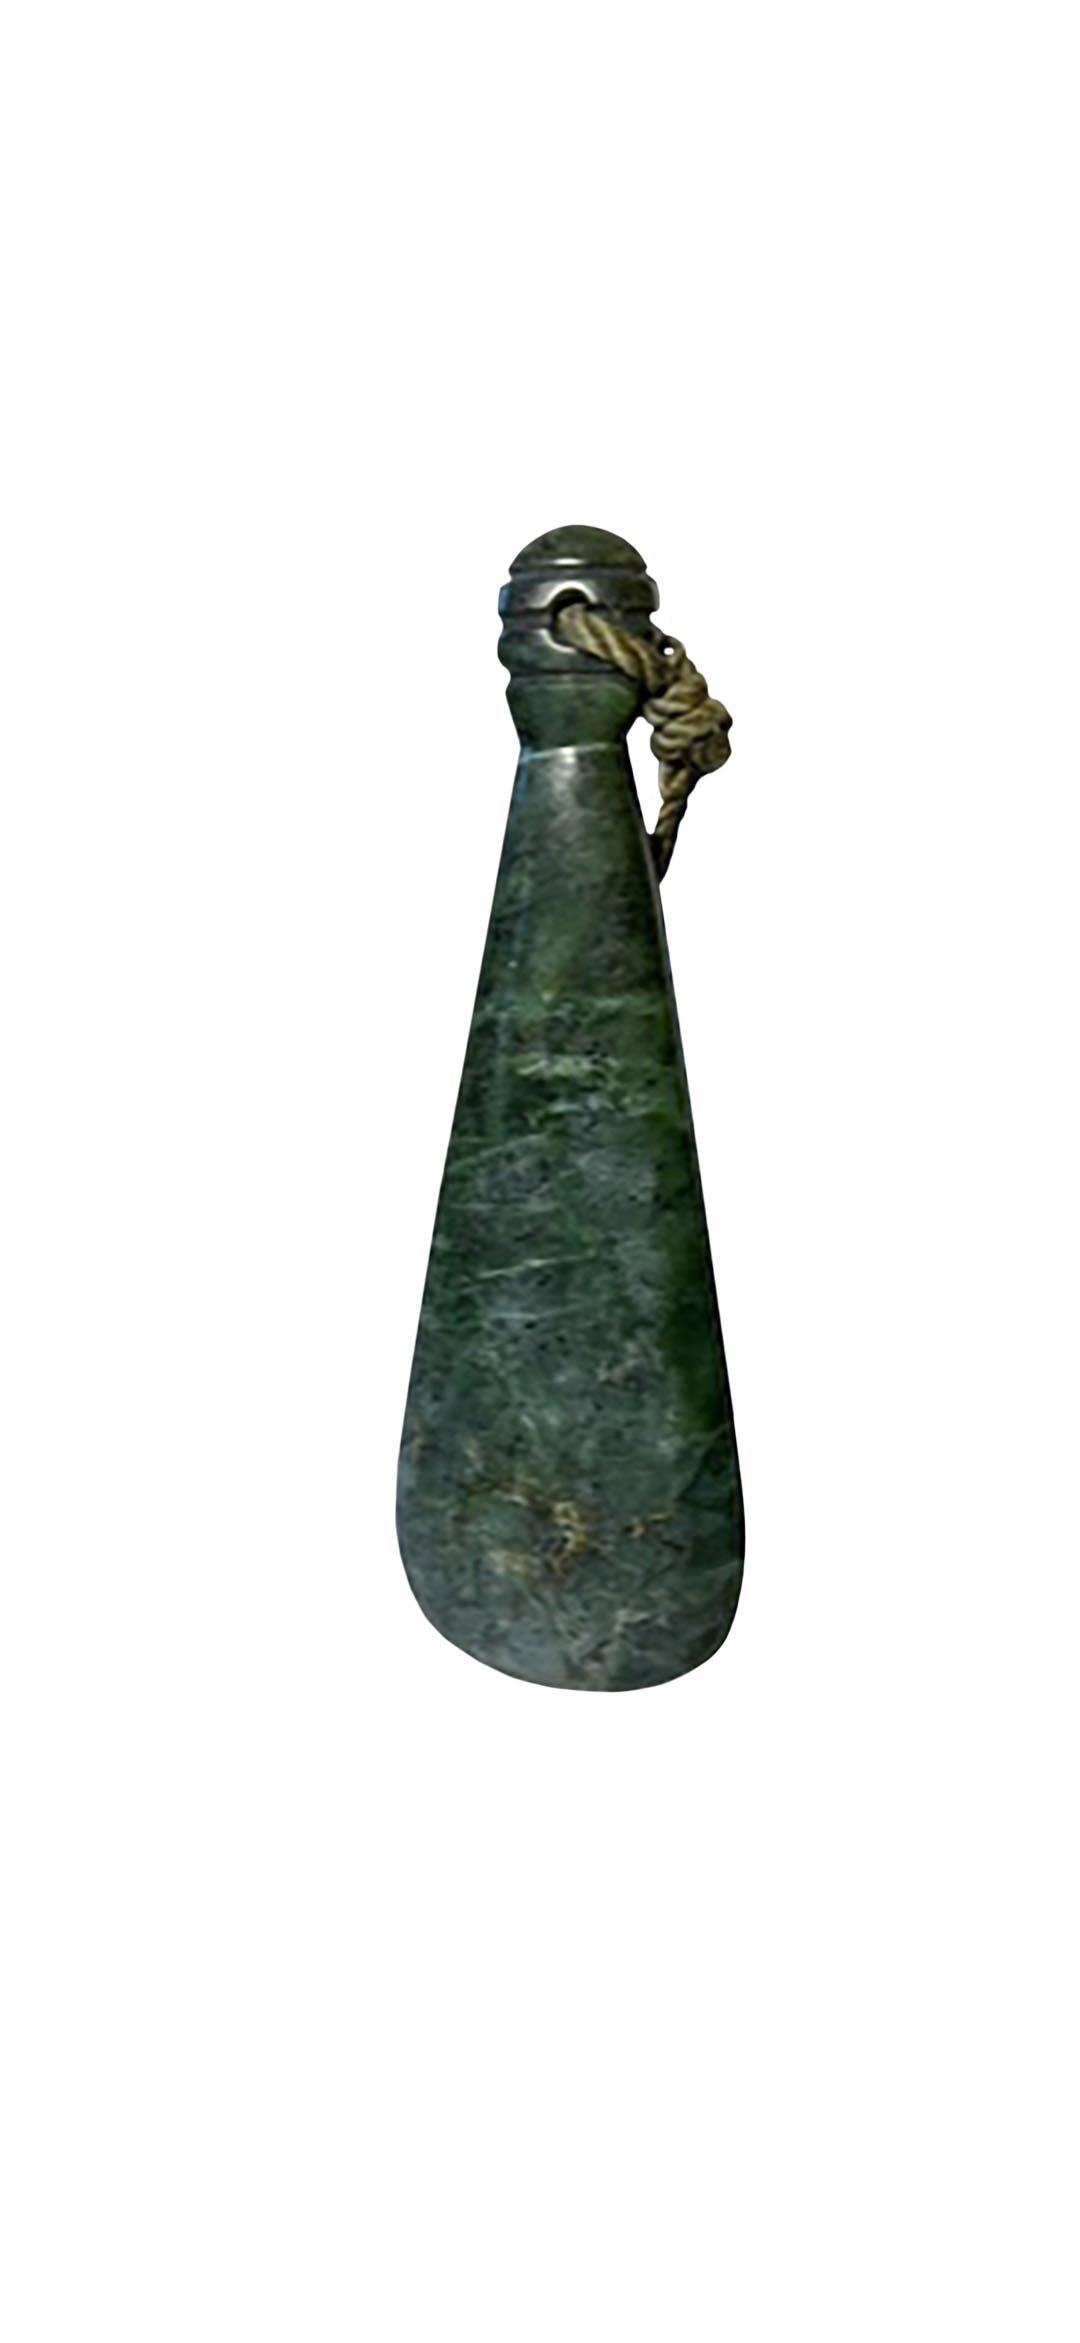 Ein Patu ist eine keulenartige Waffe, die vom Maori-Stamm in Neuseeland verwendet wird. Ein ähnliches Exemplar befindet sich im Michael C. Rockefeller-Flügel des Metropolitan Museums in New York City. Dieses Patu ist aus Jade gefertigt. 19.-20.